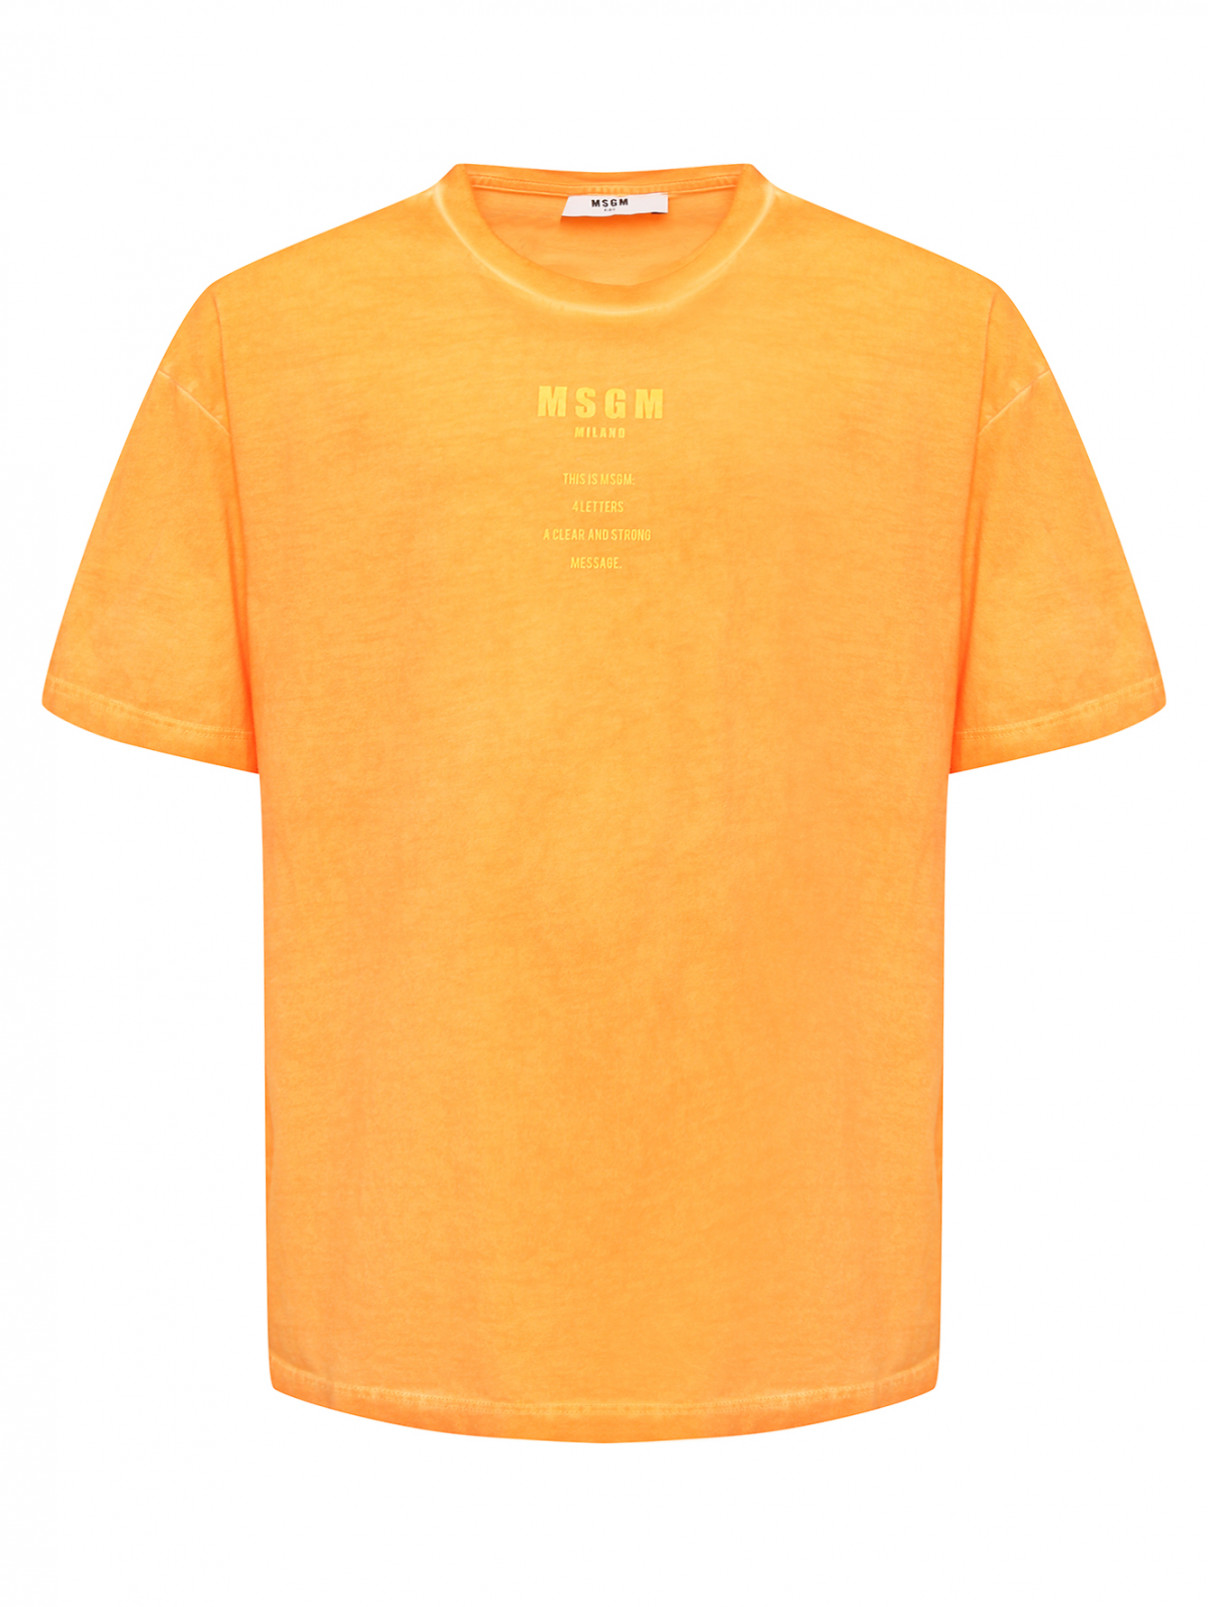 Трикотажная футболка с принтом MSGM  –  Общий вид  – Цвет:  Оранжевый